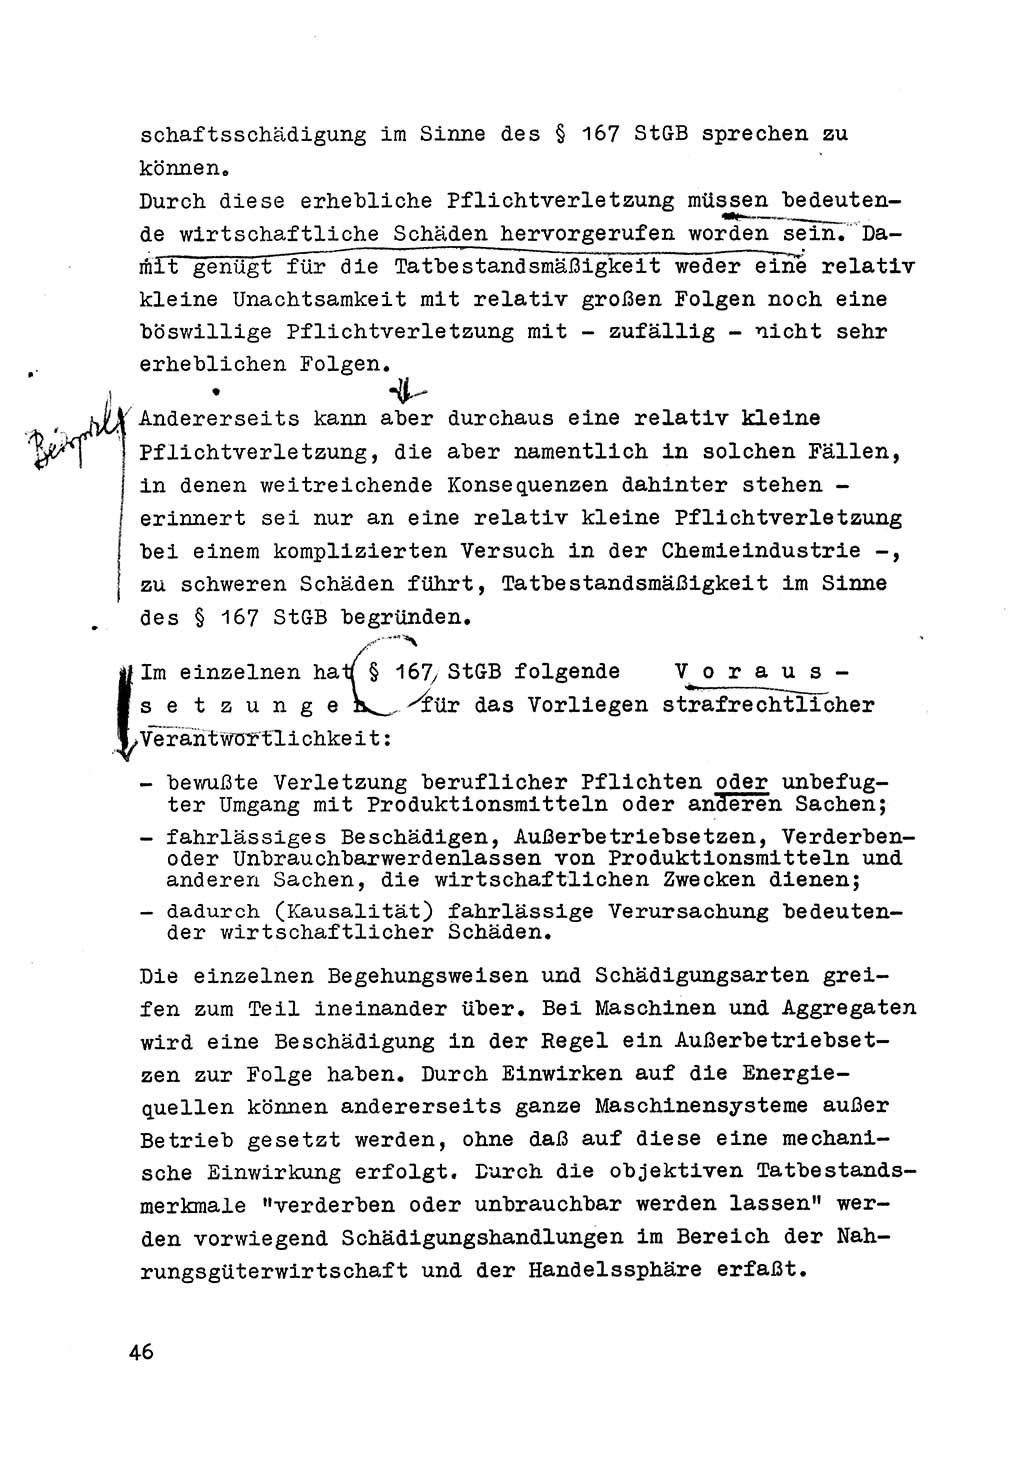 Strafrecht der DDR (Deutsche Demokratische Republik), Besonderer Teil, Lehrmaterial, Heft 6 1970, Seite 46 (Strafr. DDR BT Lehrmat. H. 6 1970, S. 46)